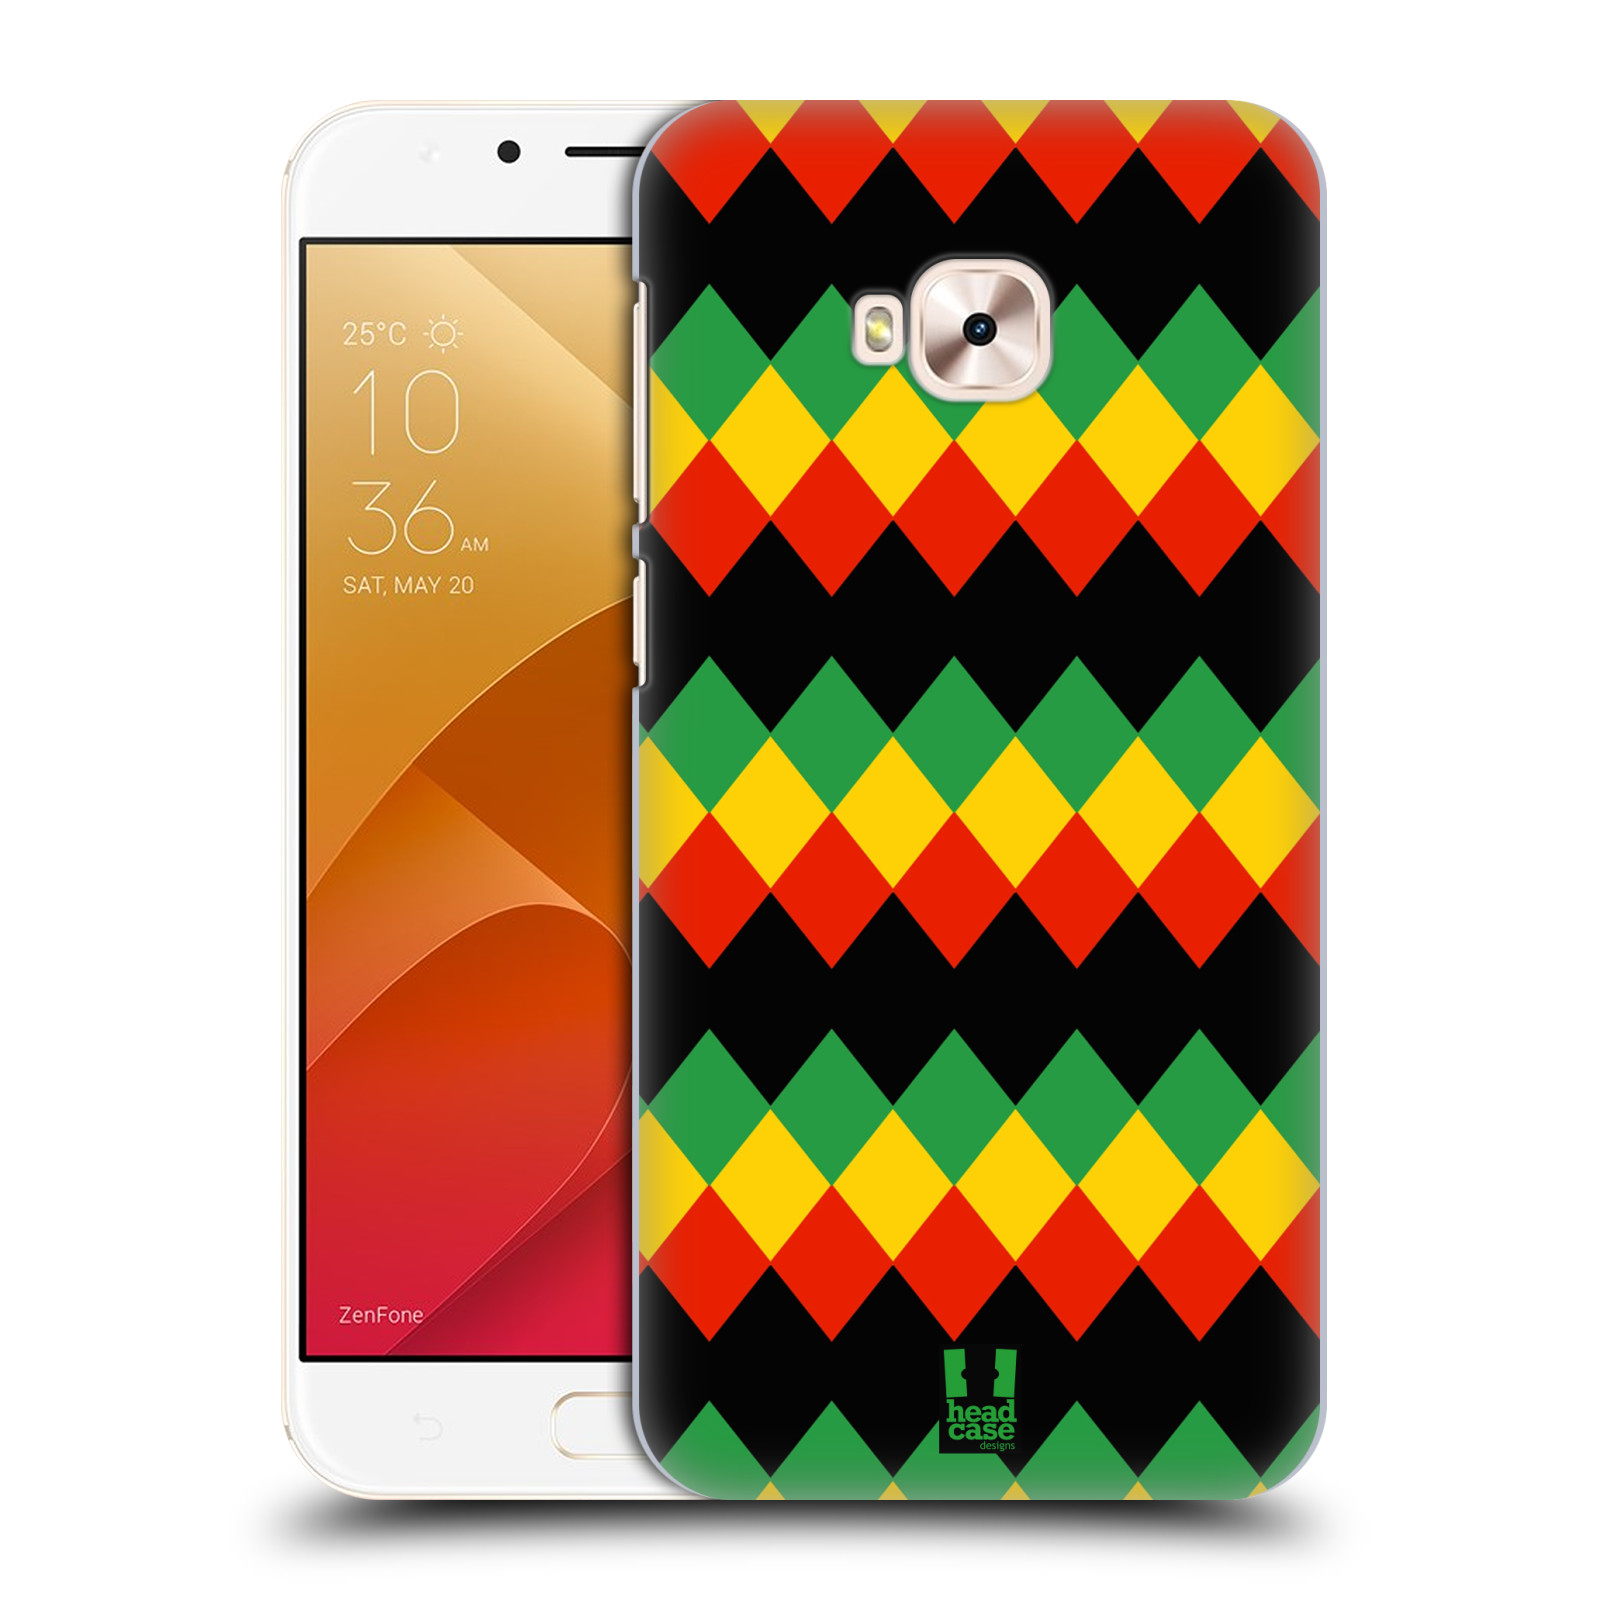 HEAD CASE plastový obal na mobil Asus Zenfone 4 Selfie Pro ZD552KL vzor Rasta barevné vzory DIAMANT